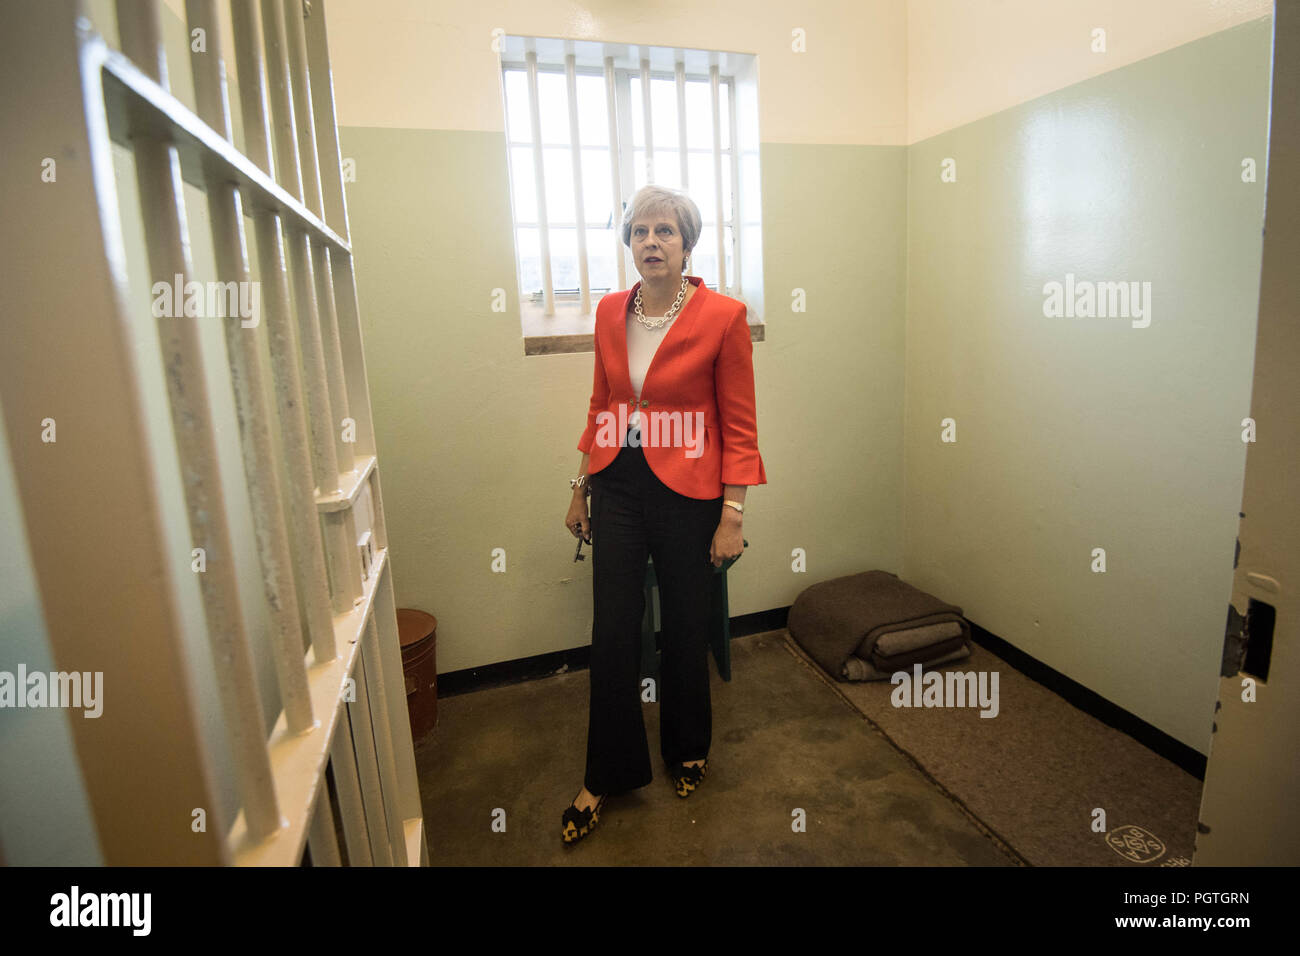 Premierminister Theresa May tritt in eine Zelle auf Robben Island Kapstadt, Südafrika, die politischen Gefangenen Nelson Mandela, der Präsident von Südafrika, und wer dort war für 18 Jahre untergebracht. Stockfoto